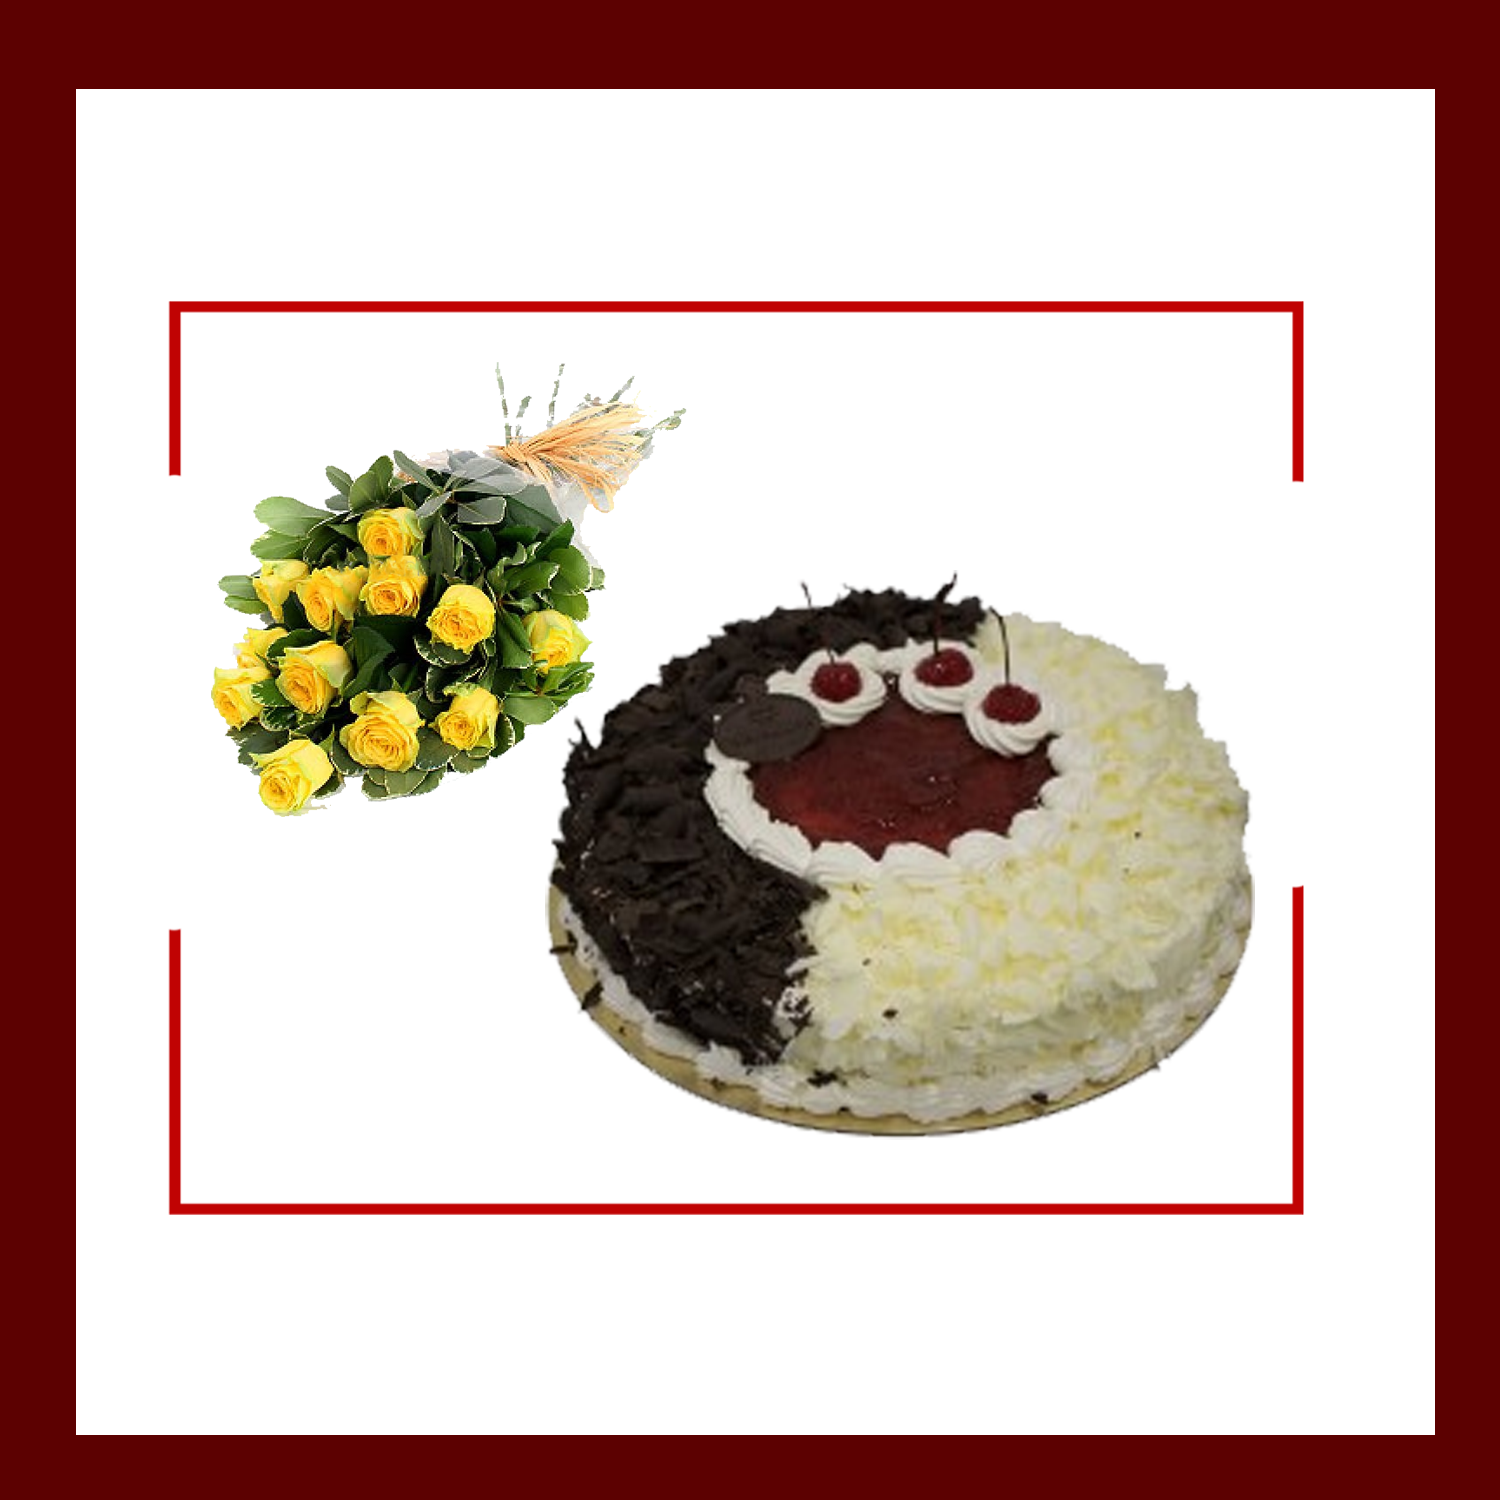 Cake & Flower Combo 19